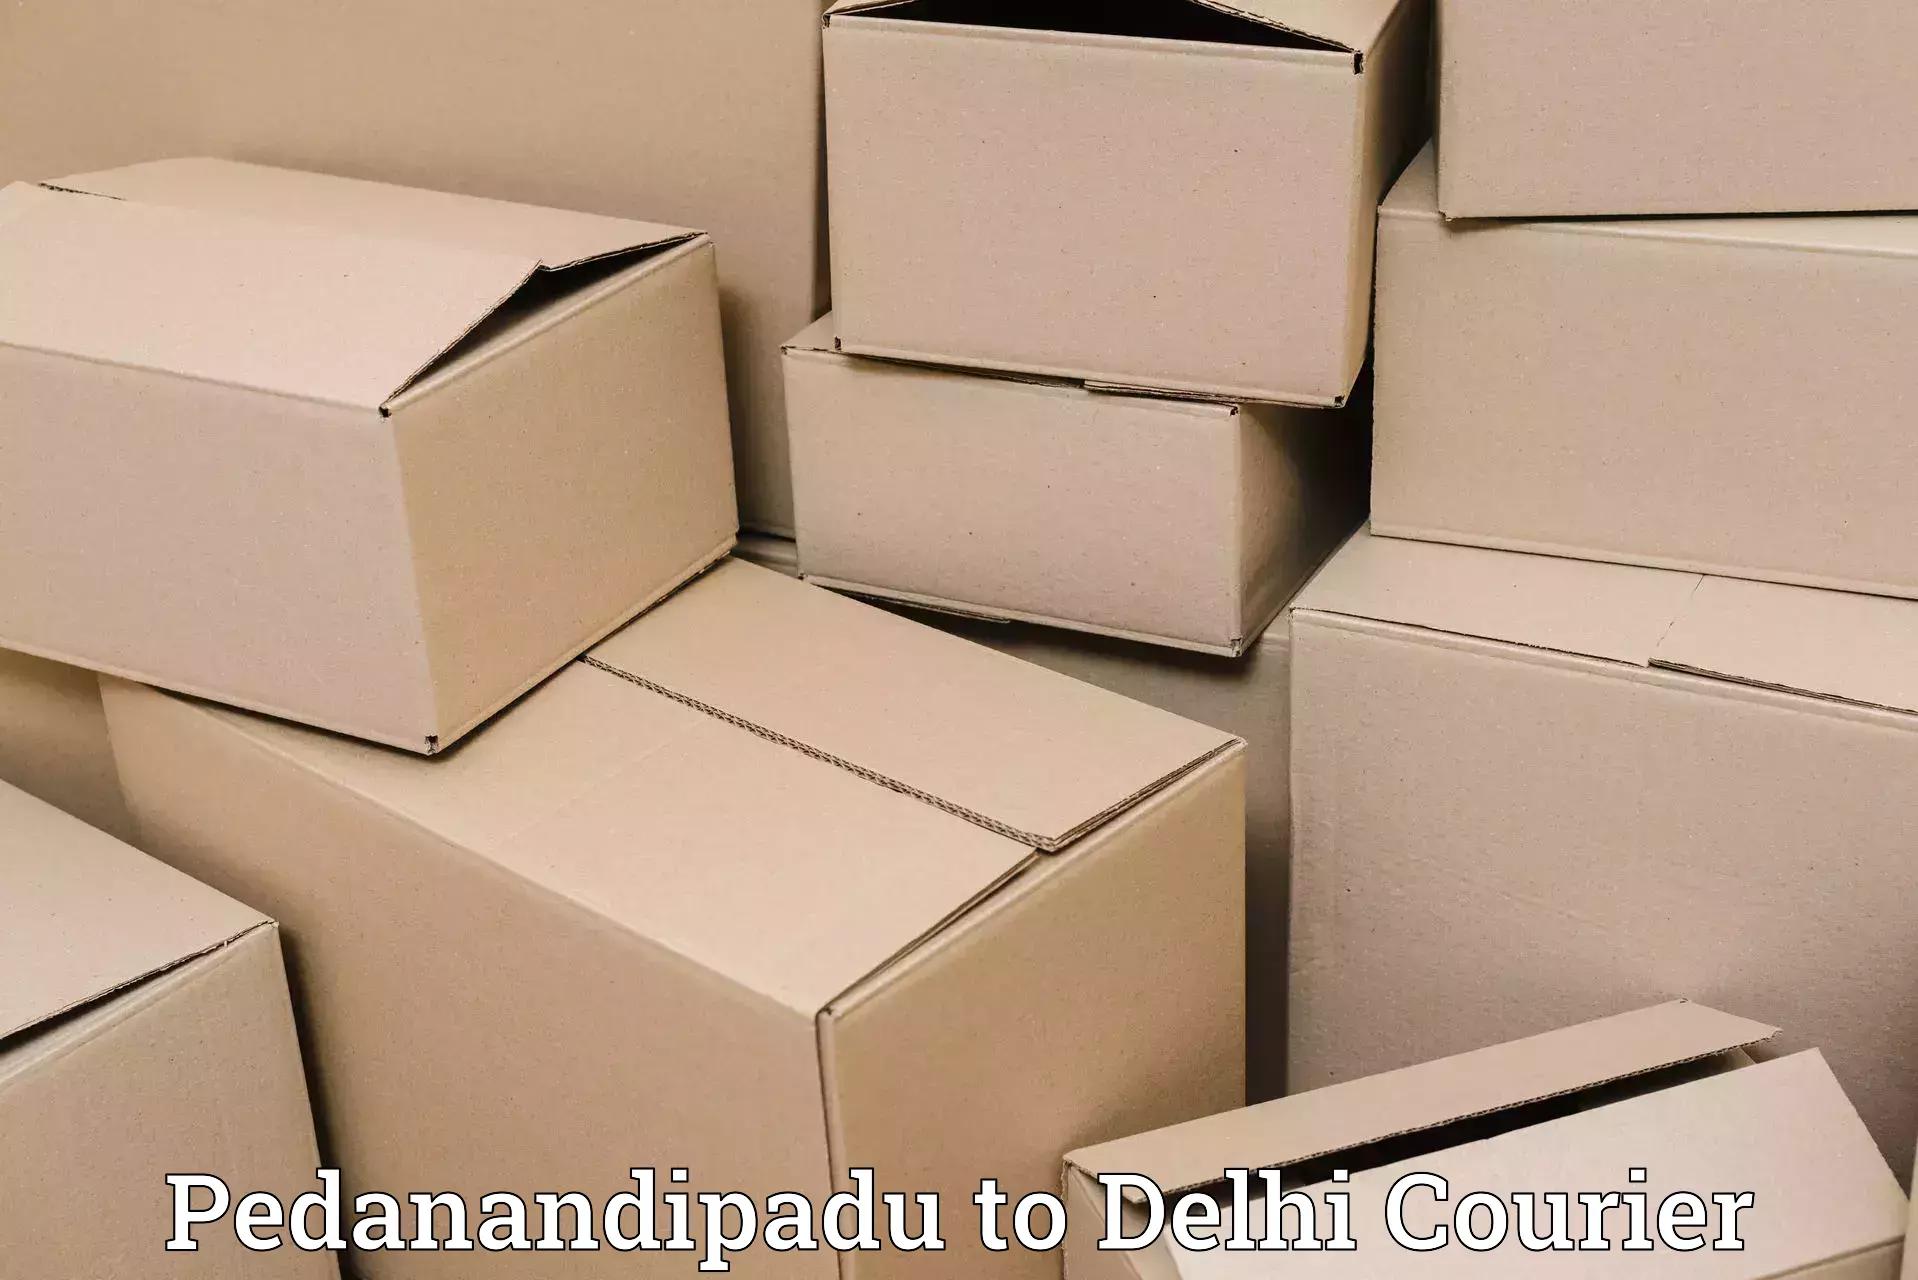 Seamless shipping service Pedanandipadu to Sarojini Nagar